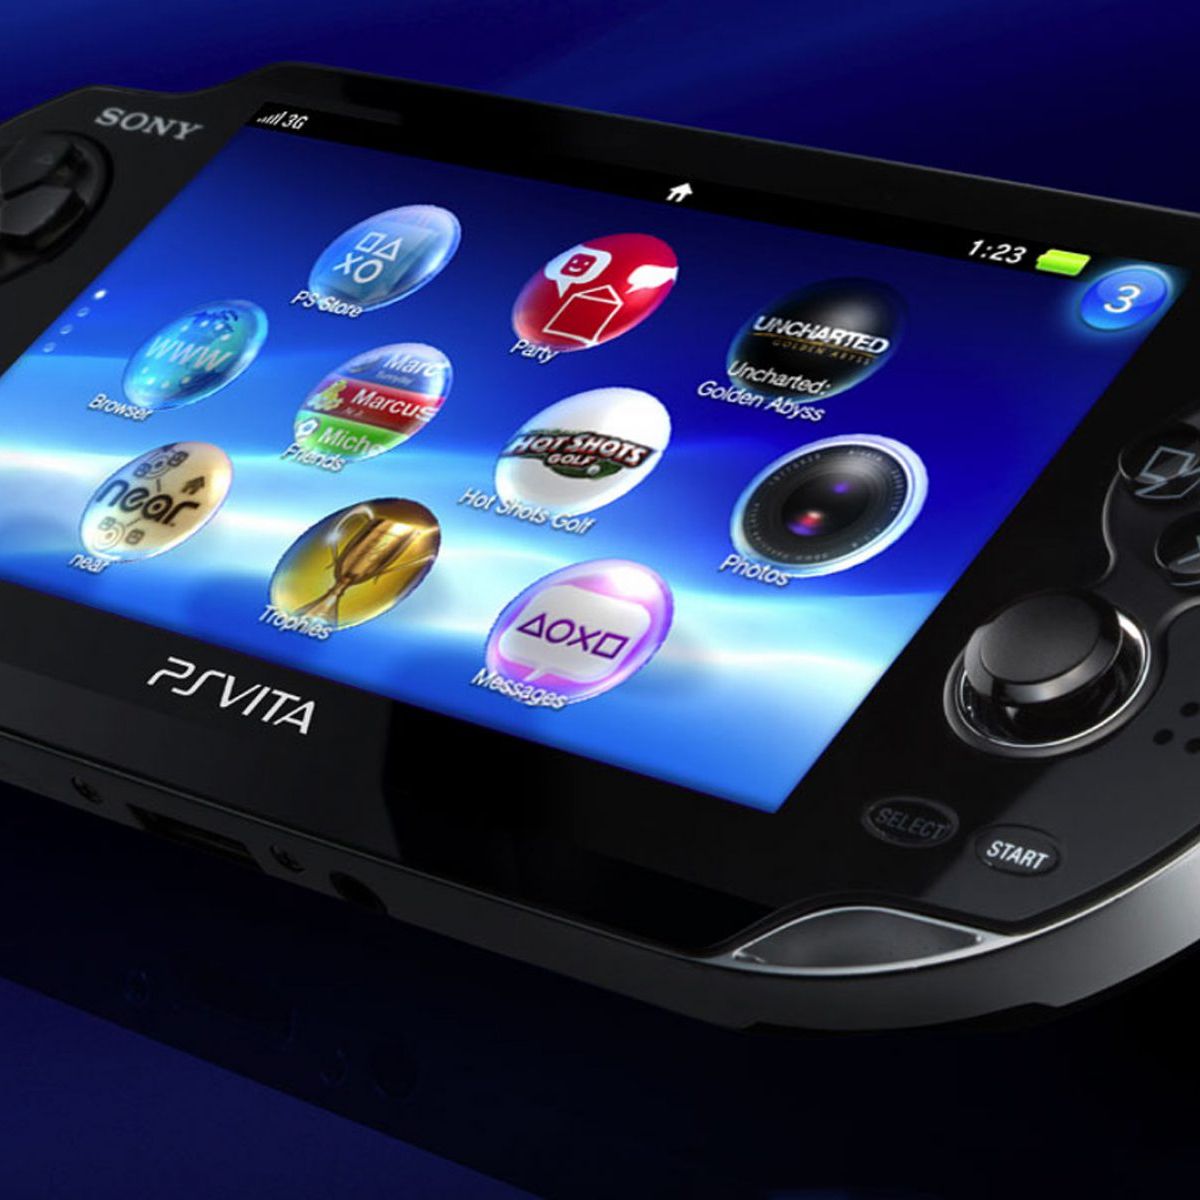 Comprar juegos para PS3 y PS Vita seguirá siendo posible, aunque más  difícil: Sony no permitirá pagarlos con tarjeta o PayPal